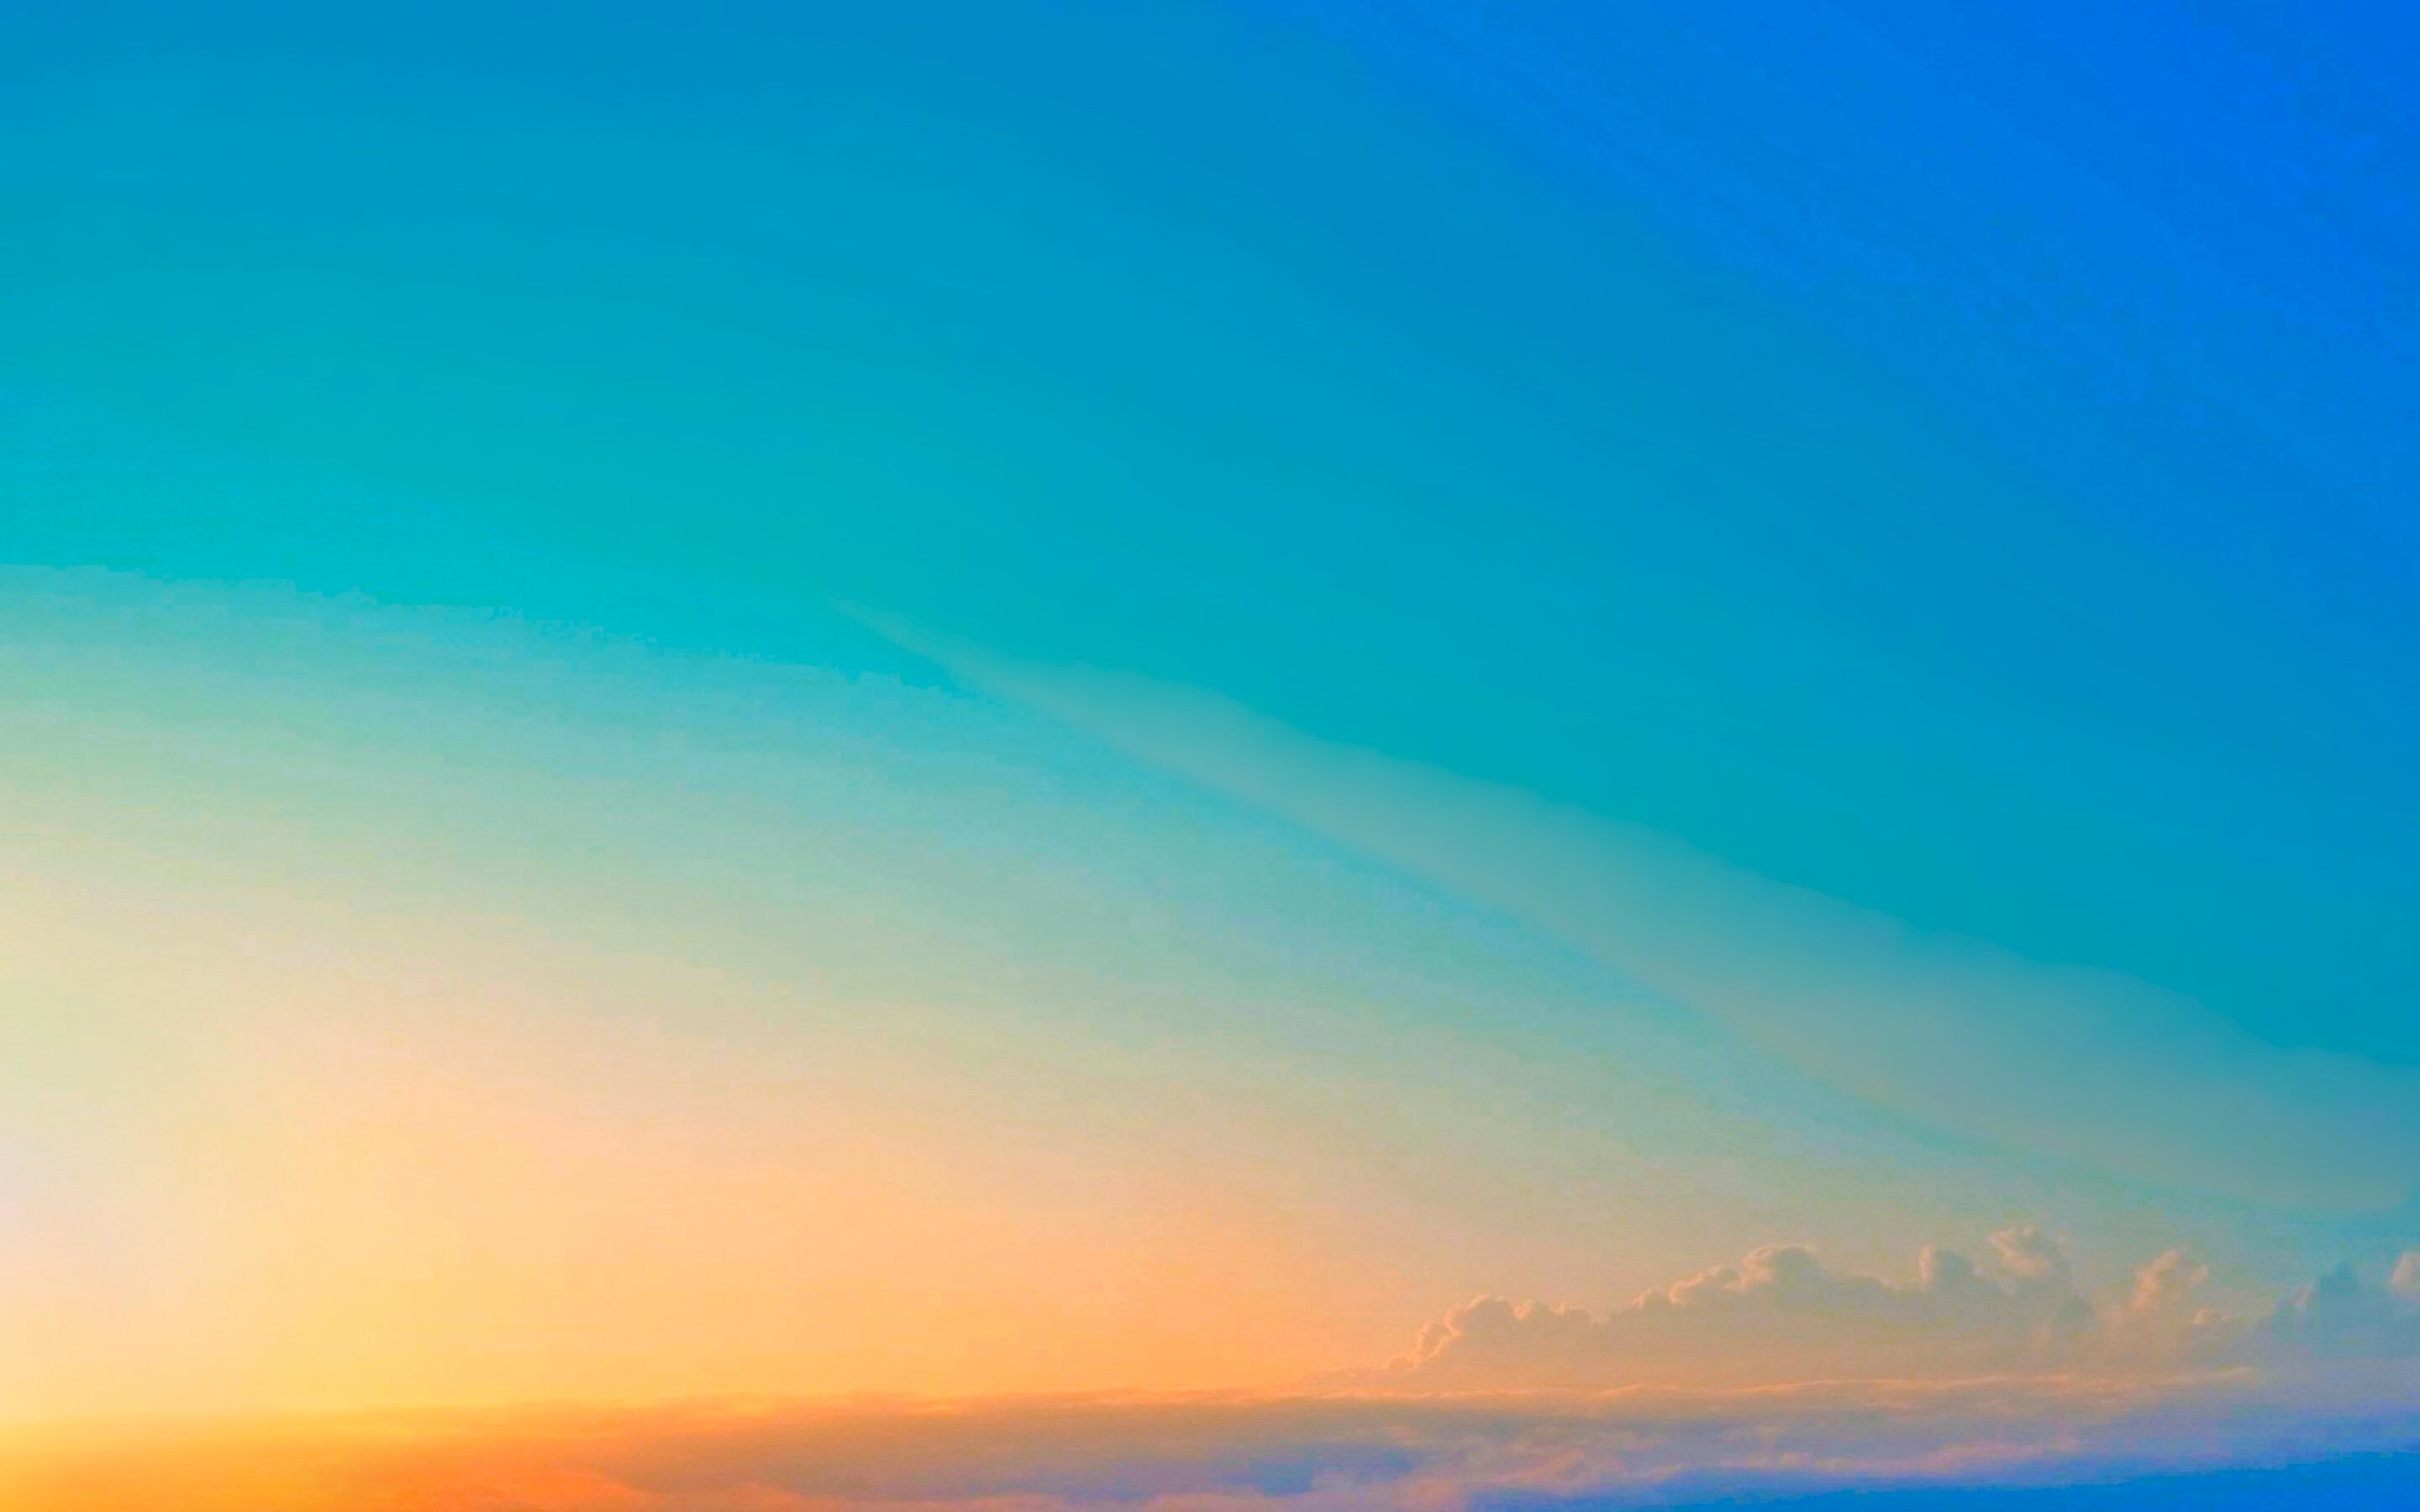 Скачать обои бесплатно Небо, Облака, Горизонт, Синий, Пастель, Живописный, Восход Солнца, Земля/природа картинка на рабочий стол ПК